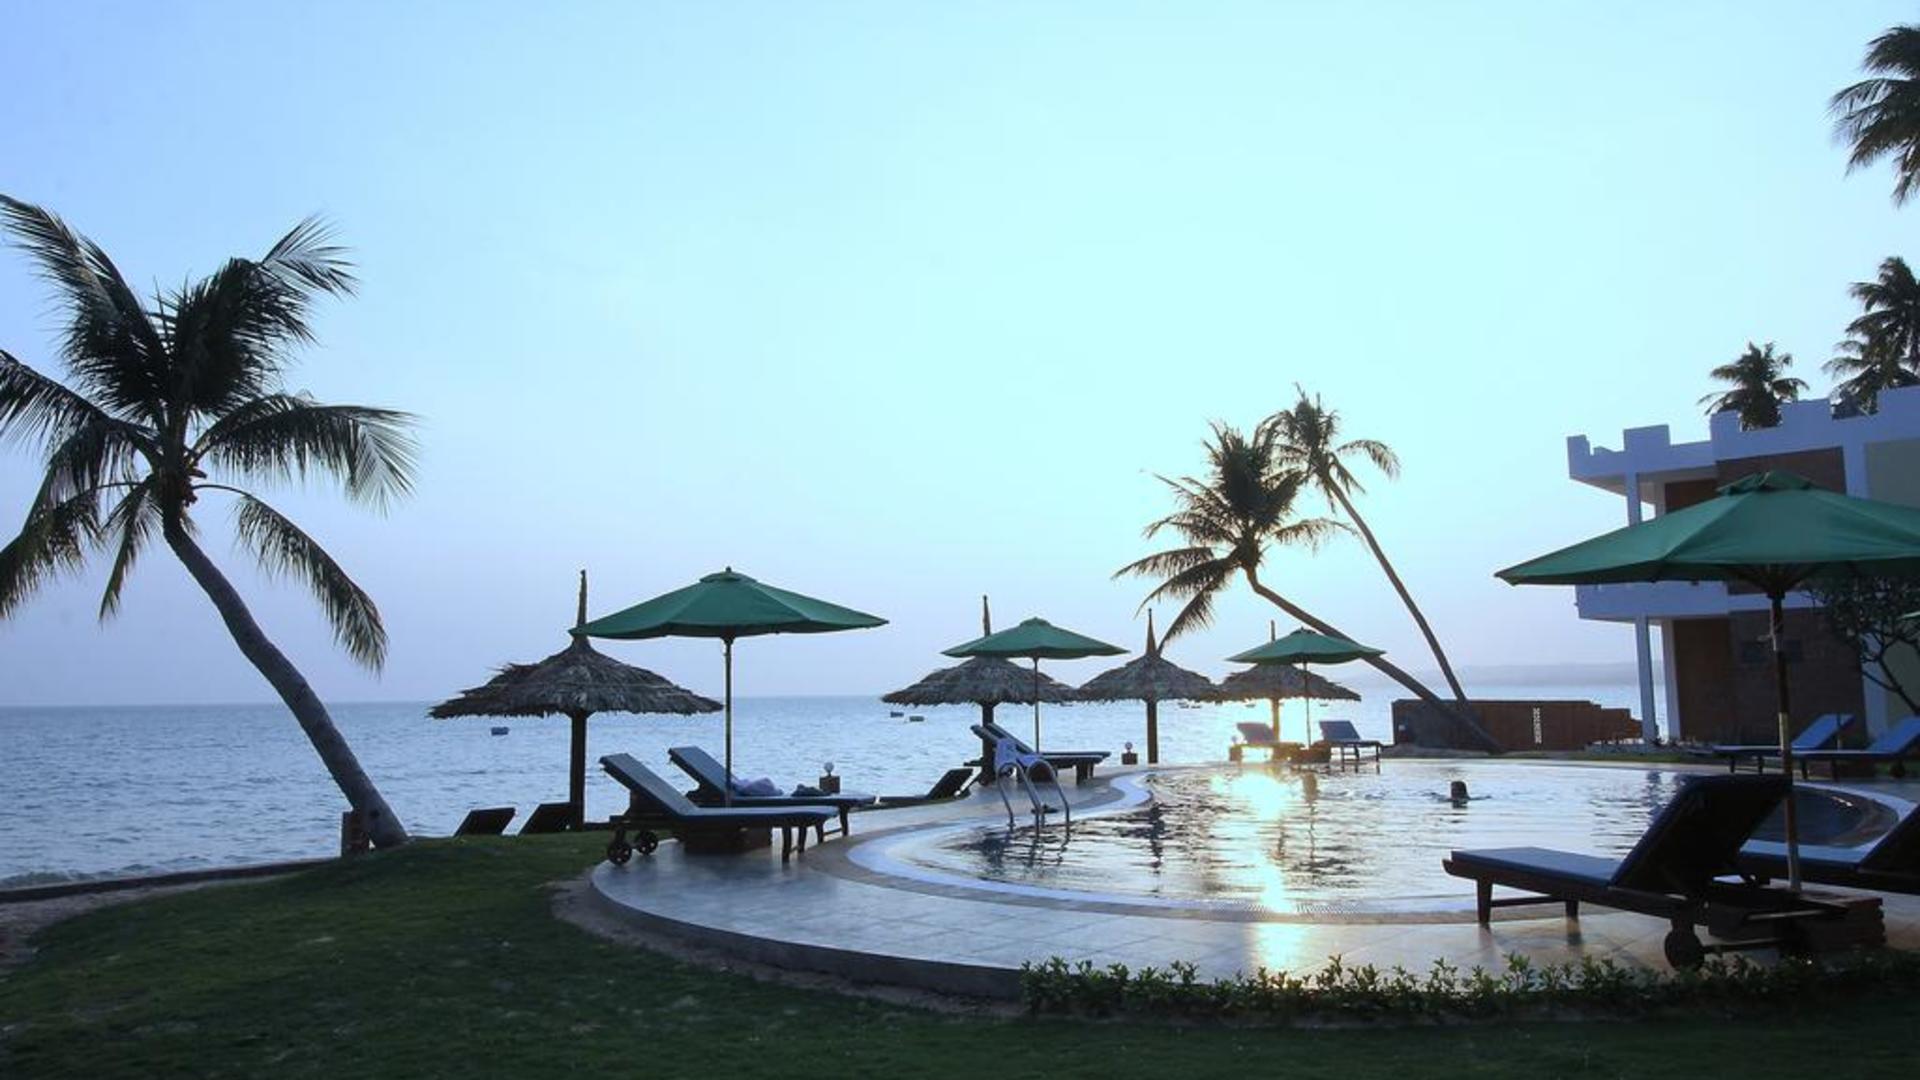 Ocean star resort 4* (вьетнам/провинция биньтхуан/муйне). отзывы отеля. рейтинг отелей и гостиниц мира - hotelscheck.